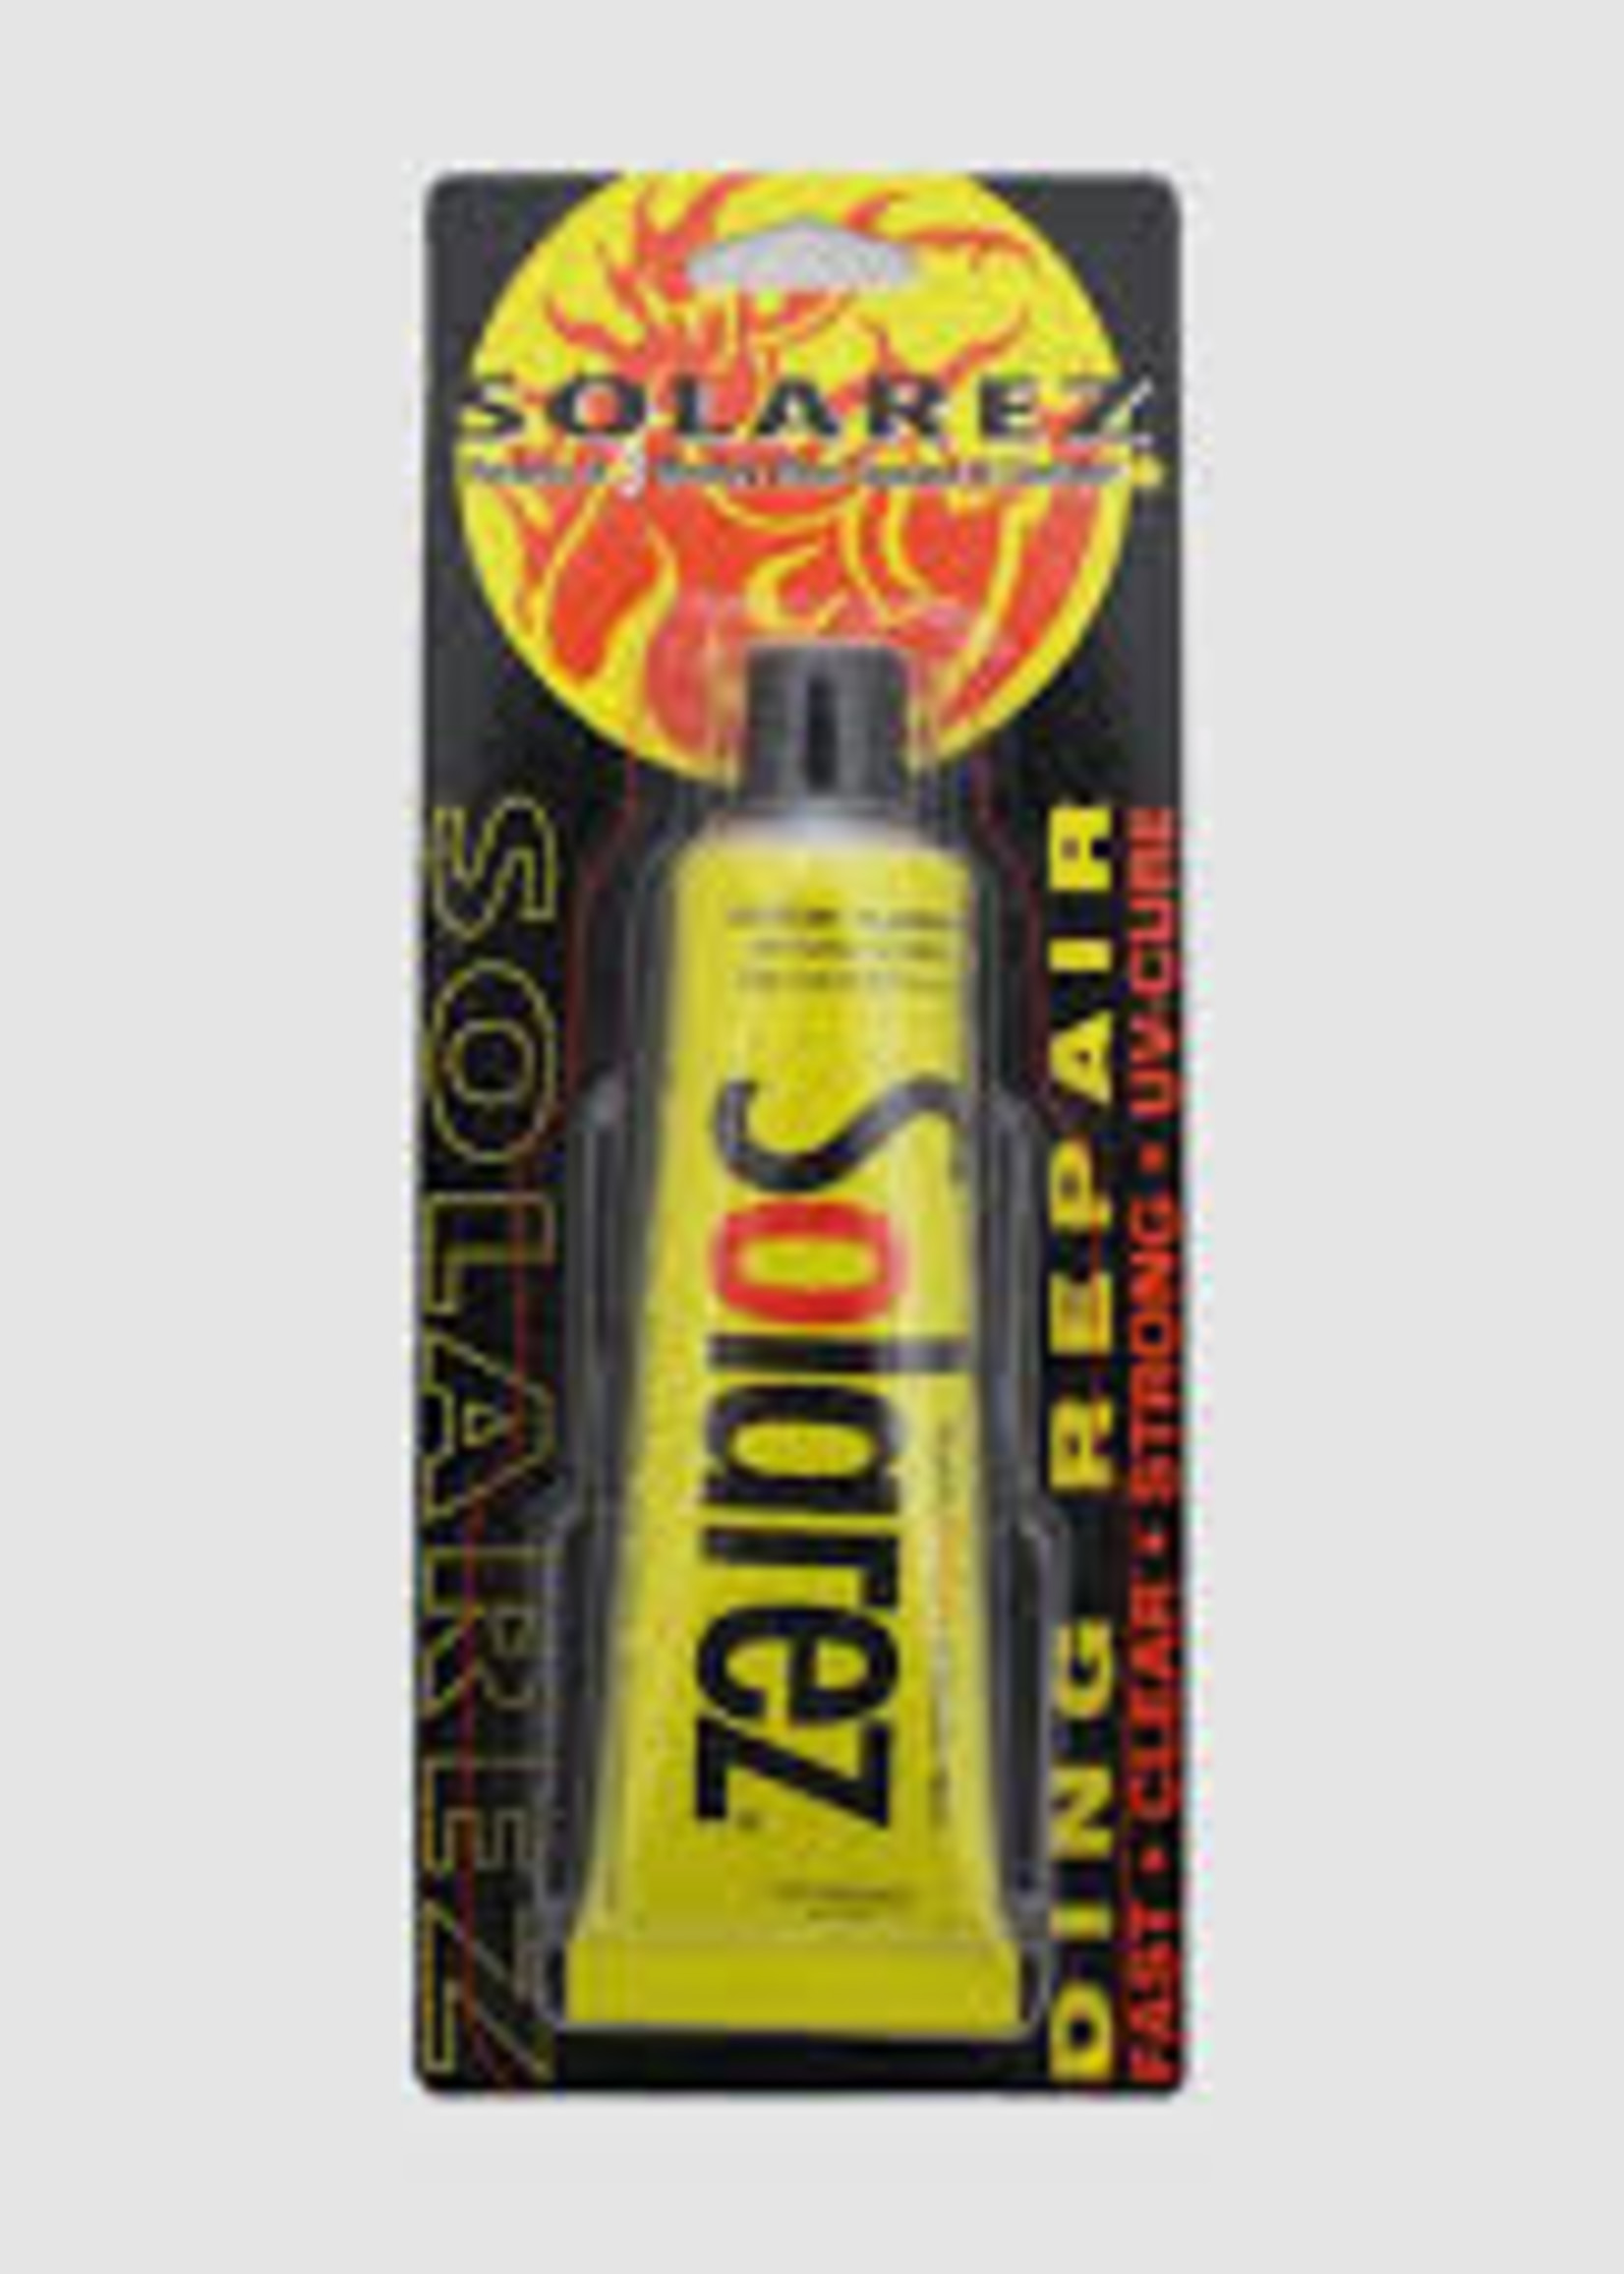 Solarez Solarez Polyester Ding Repair 2.0 oz tube